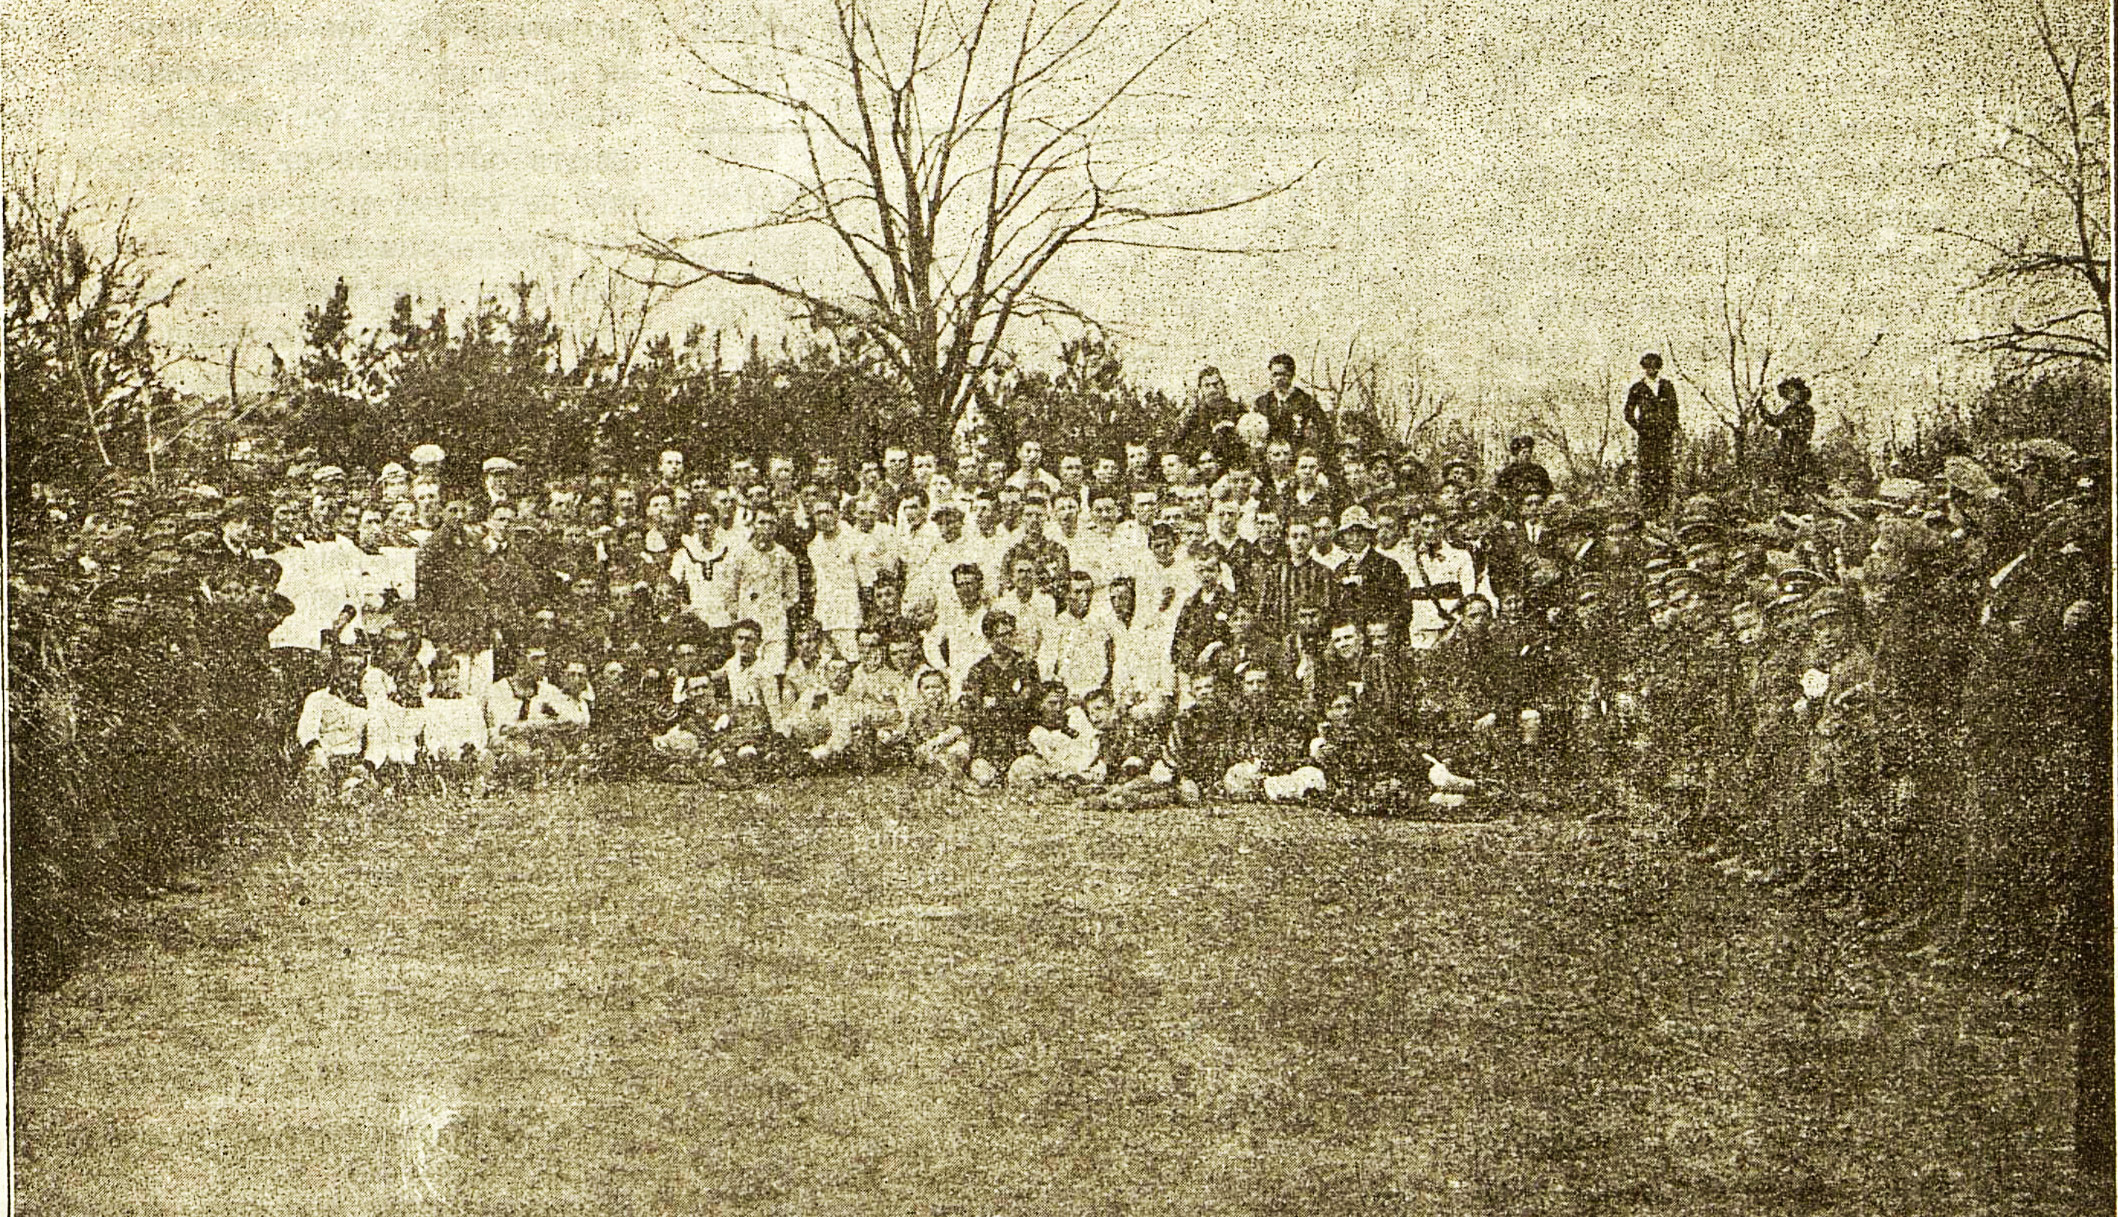 Откриване на спортния сезон в Русе през 1923 г.